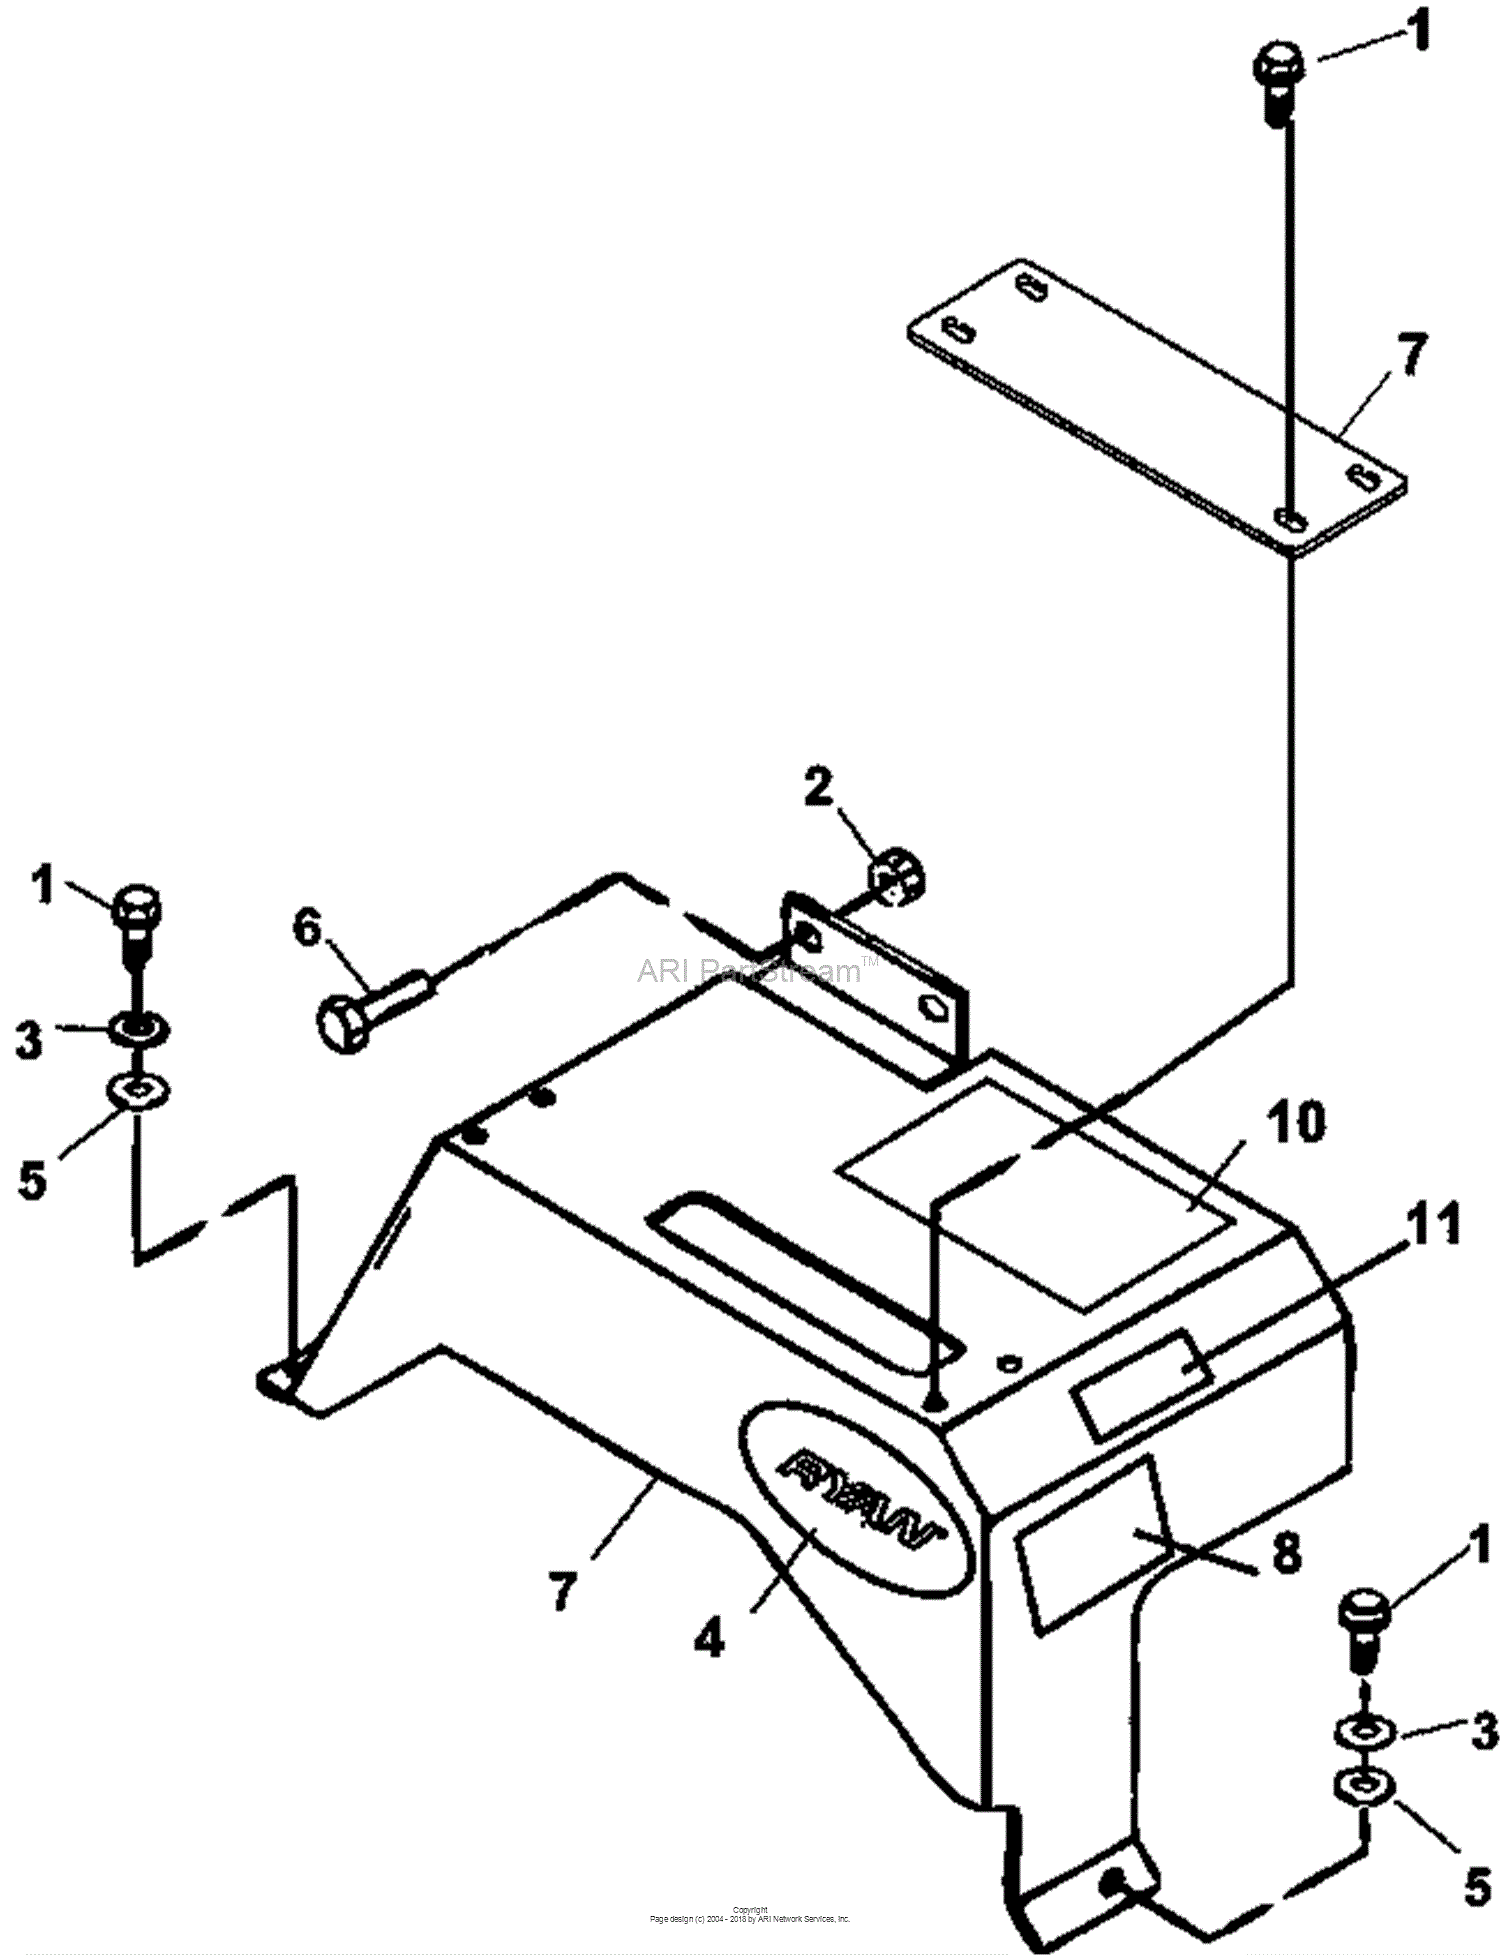 bobcat sweeper parts diagram